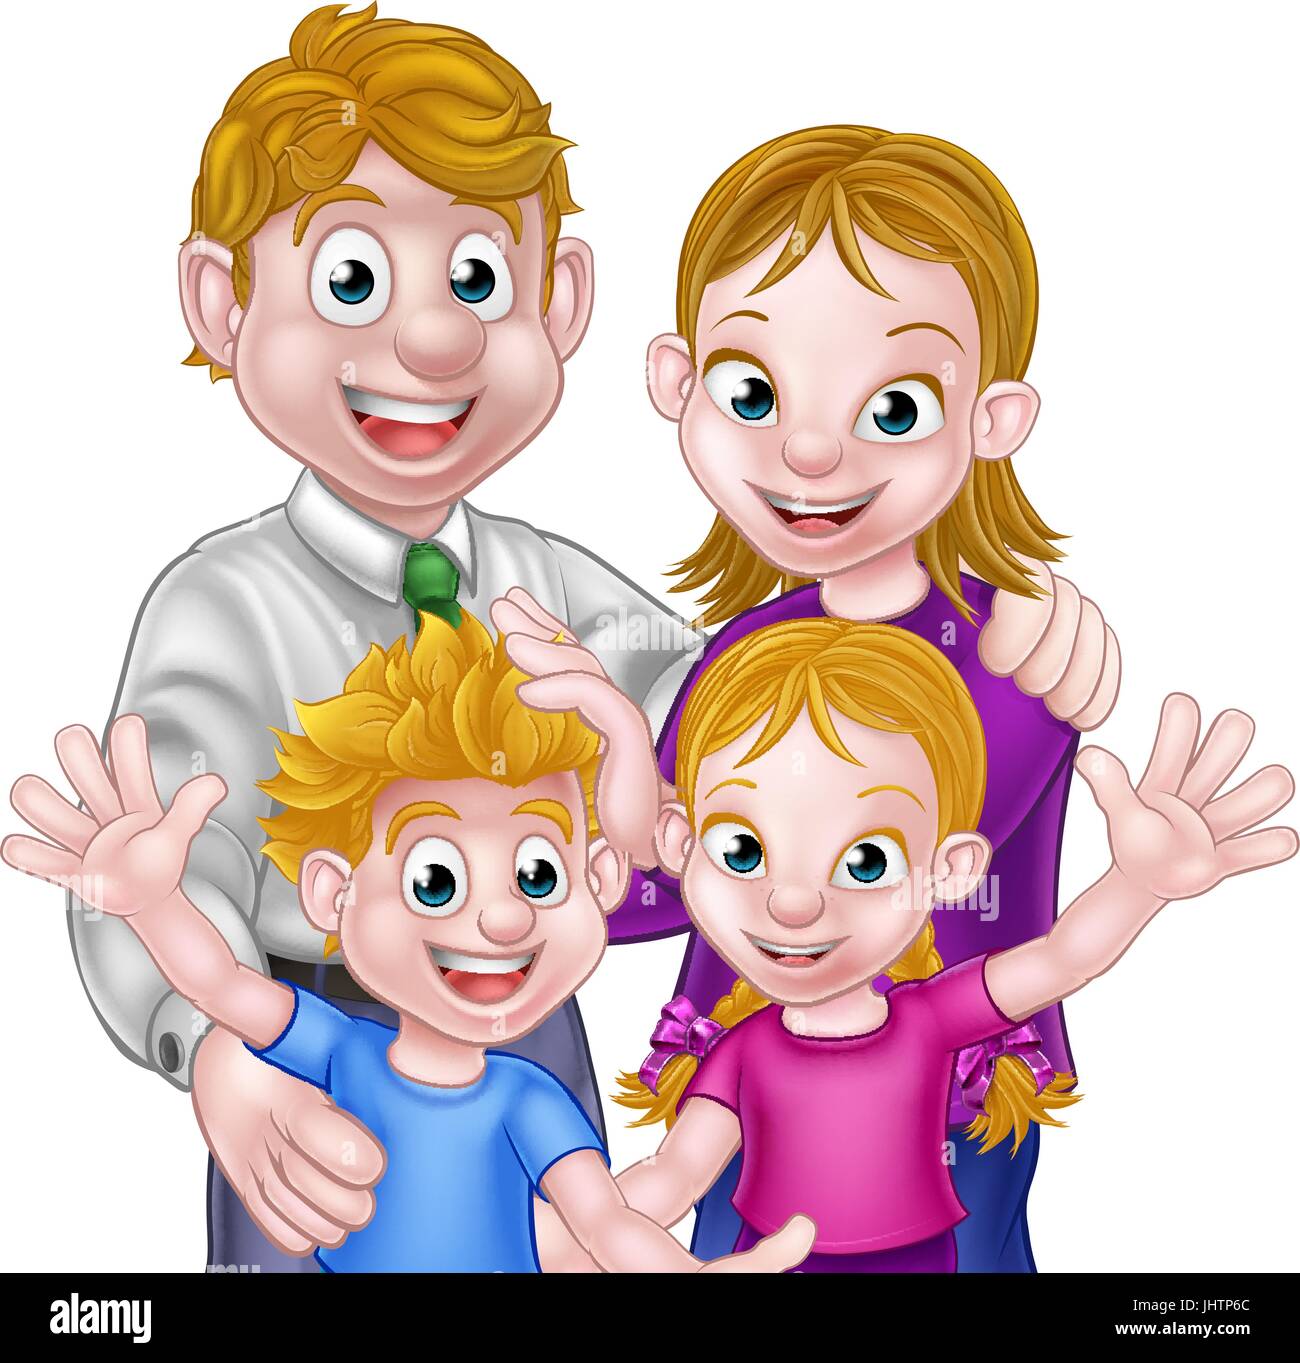 Cartoon Parents and Kids Stock Vector Image & Art - Alamy